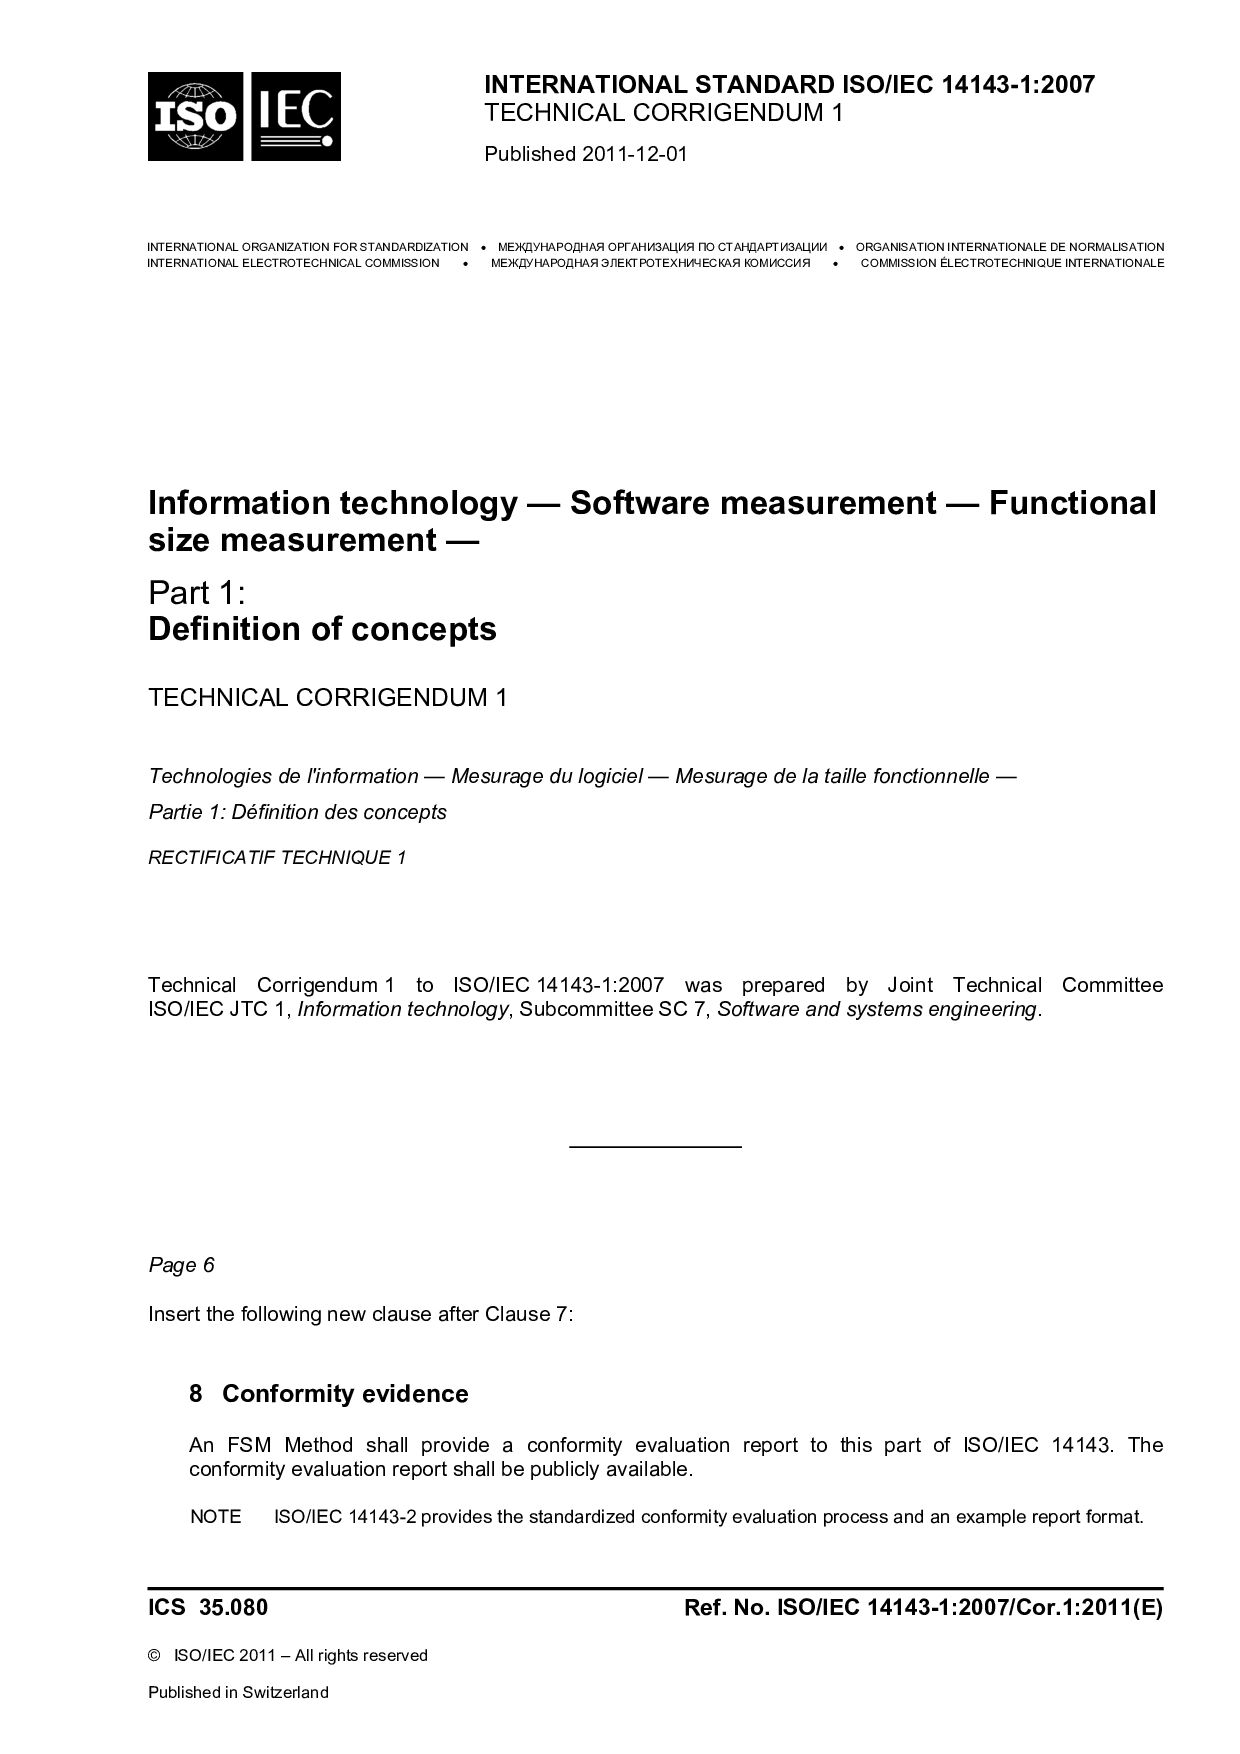 ISO/IEC 14143-1:2007/Cor 1:2011封面图